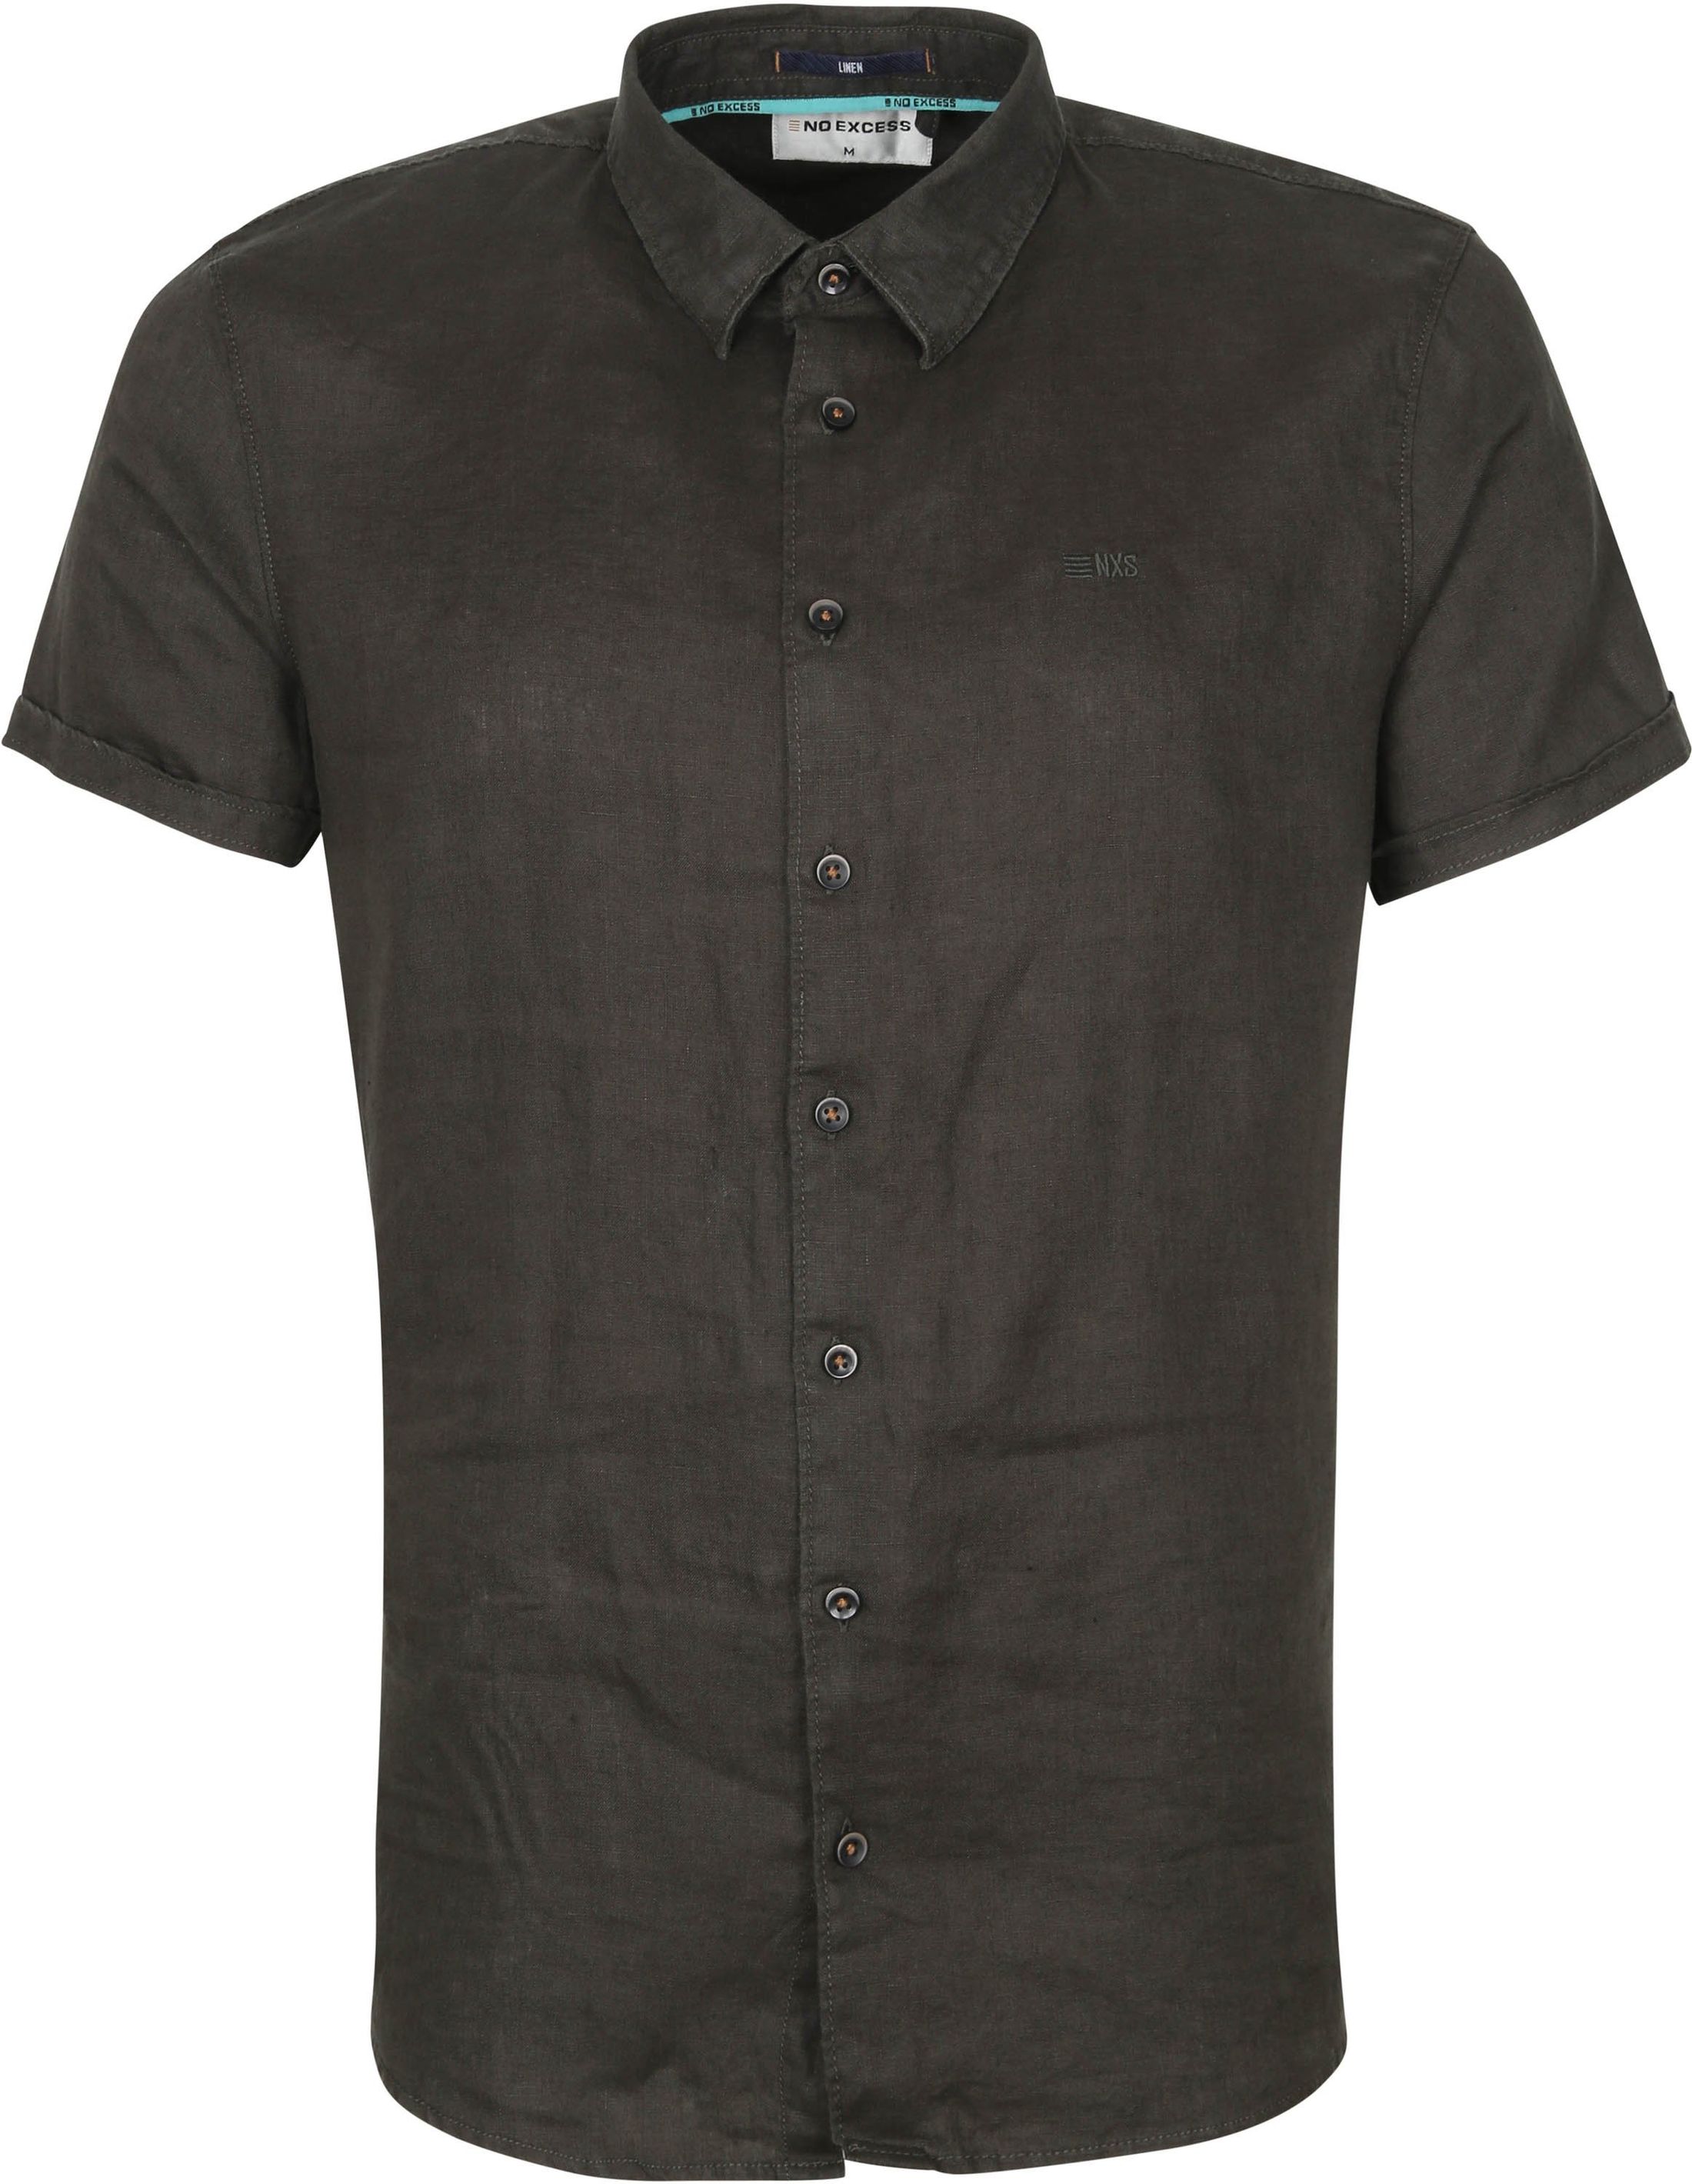 No-Excess SHS Shirt Linen Dark Dark Green Green size XL